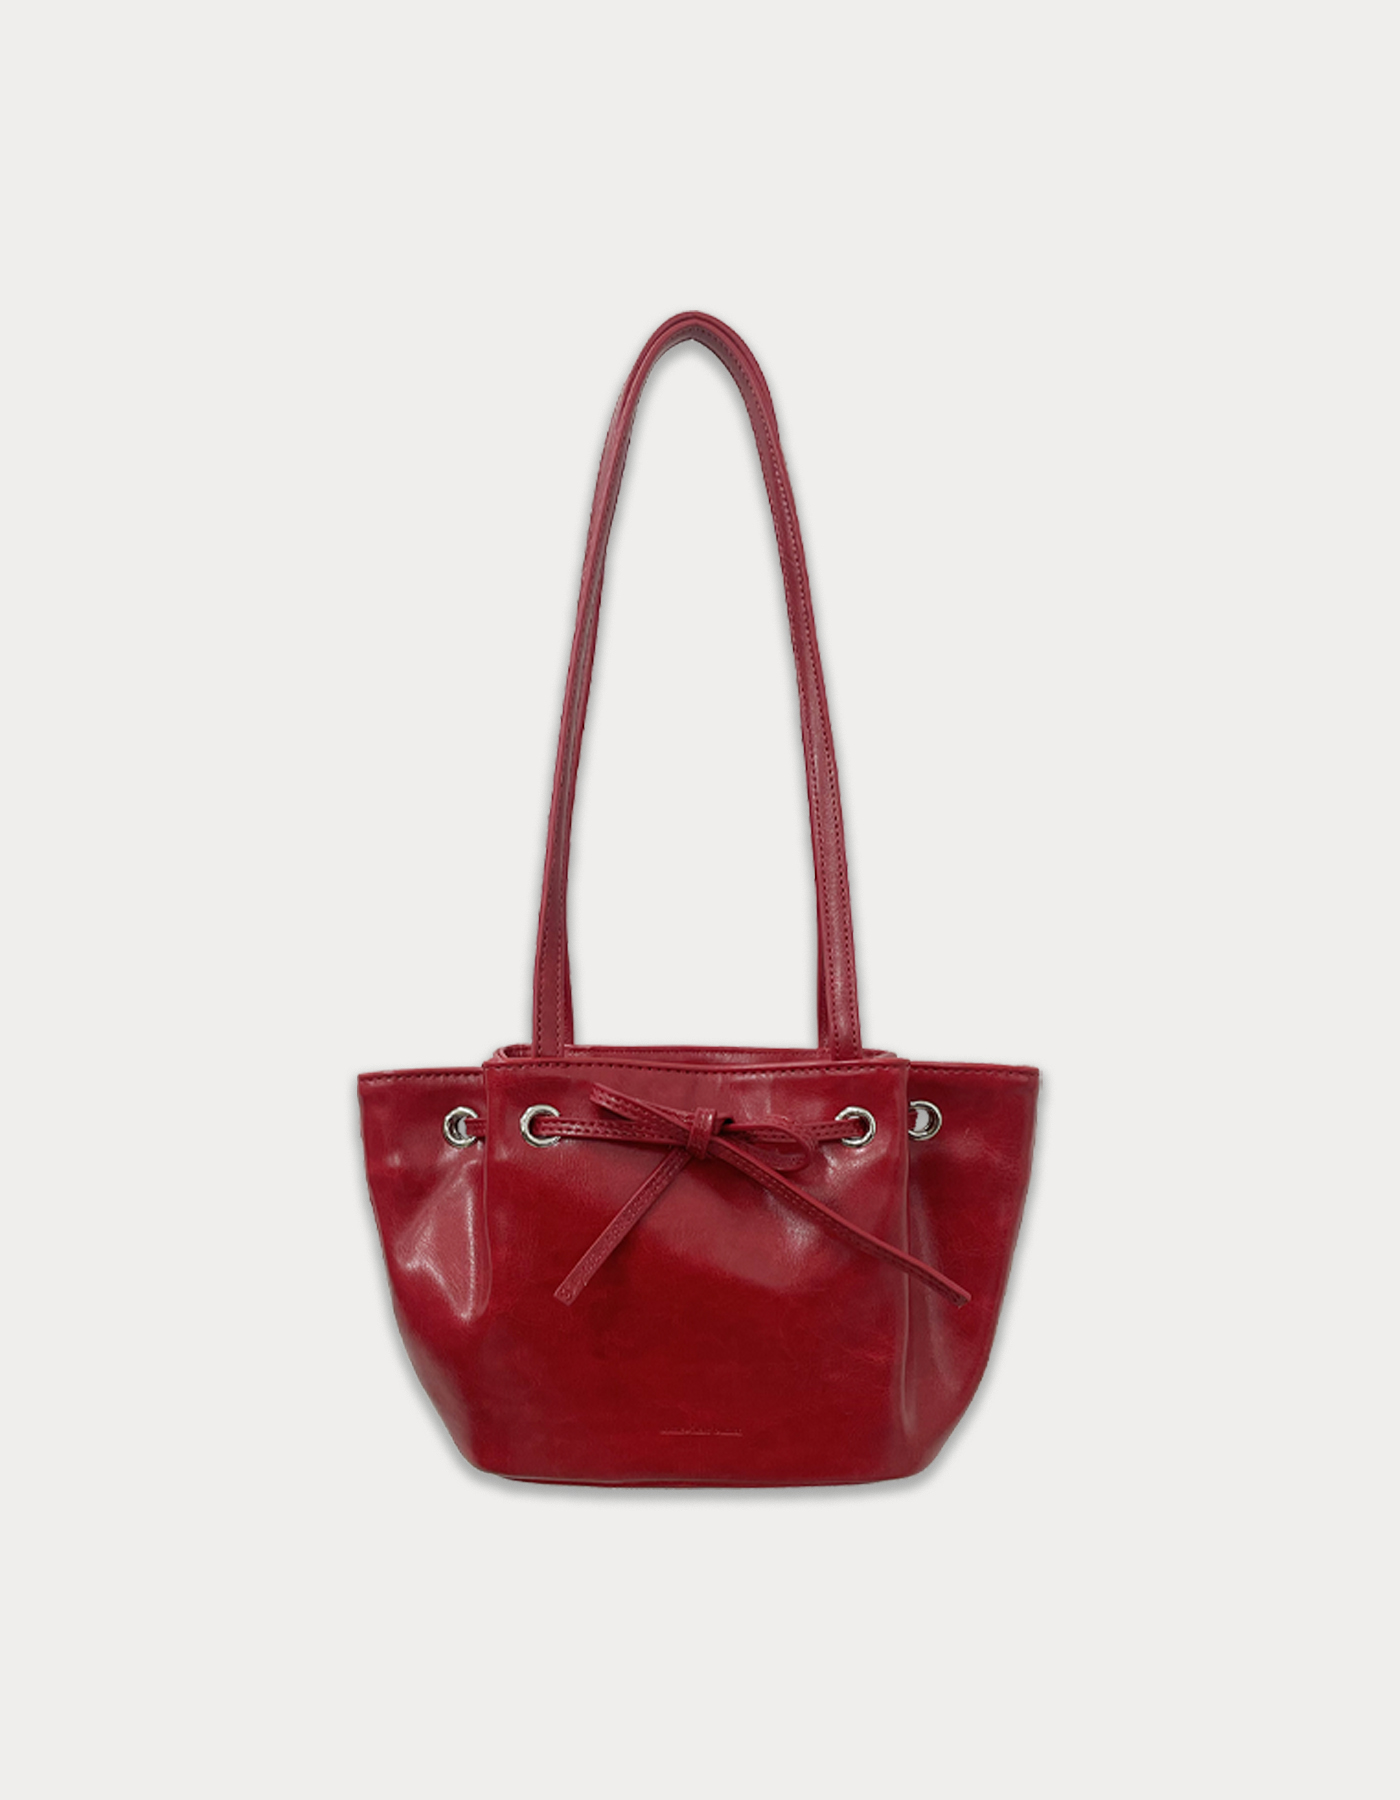 Sophie bag - vintage red